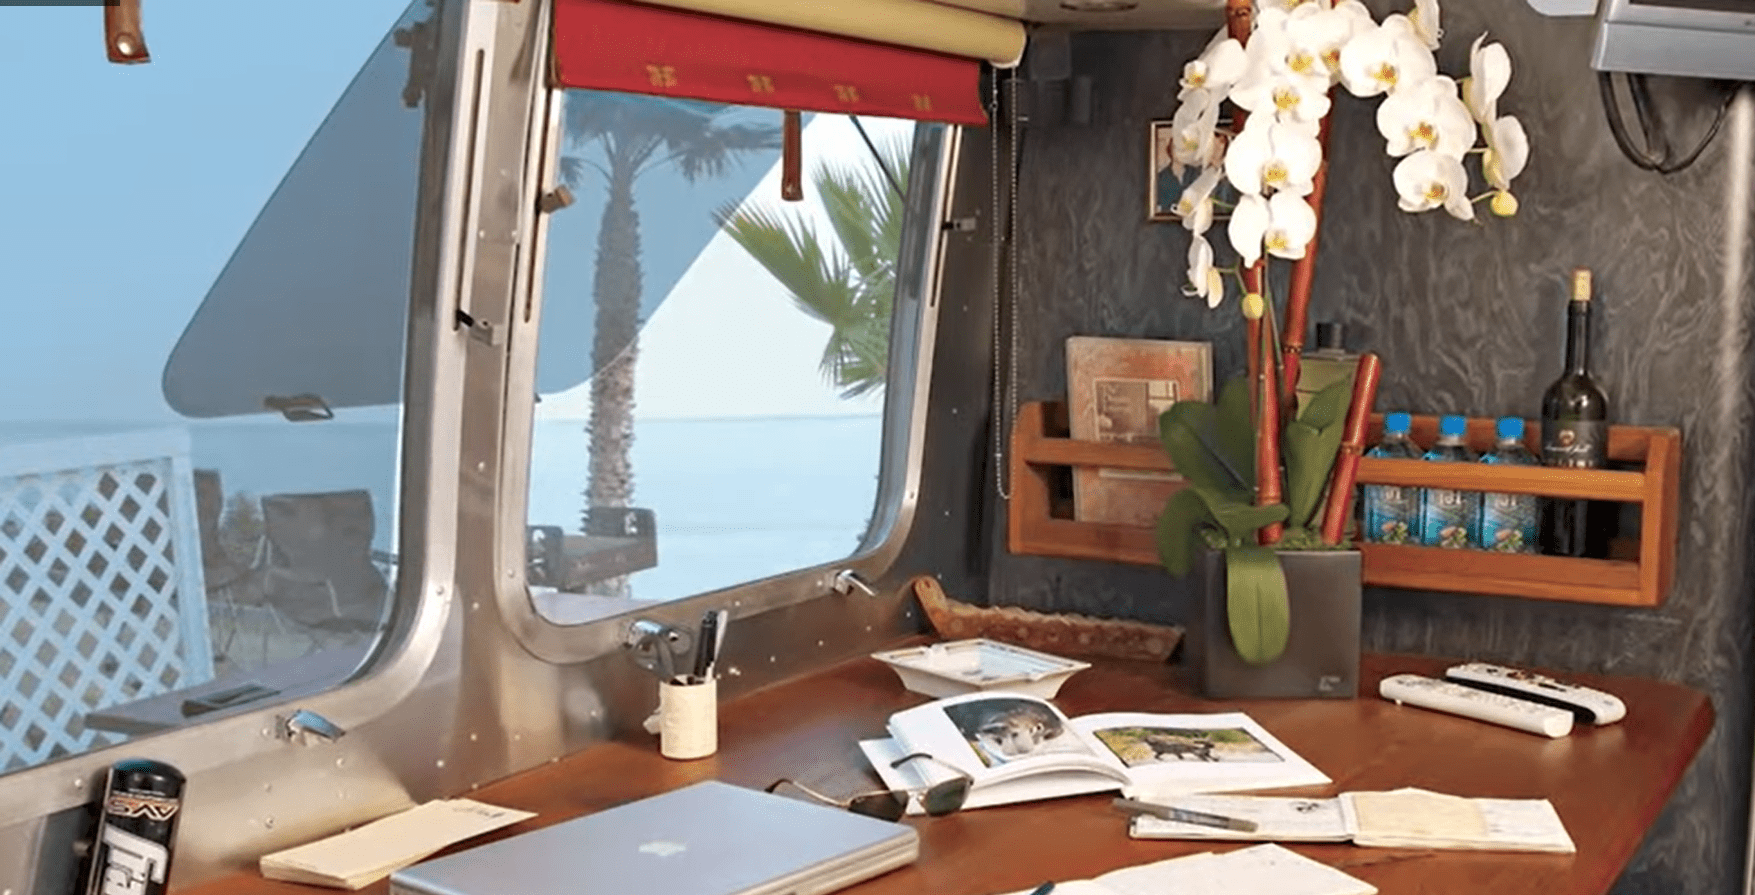 Un escritorio y ventanas en el interior de la caravana Airstream | Fuente: YouTube/Famous Entertainment